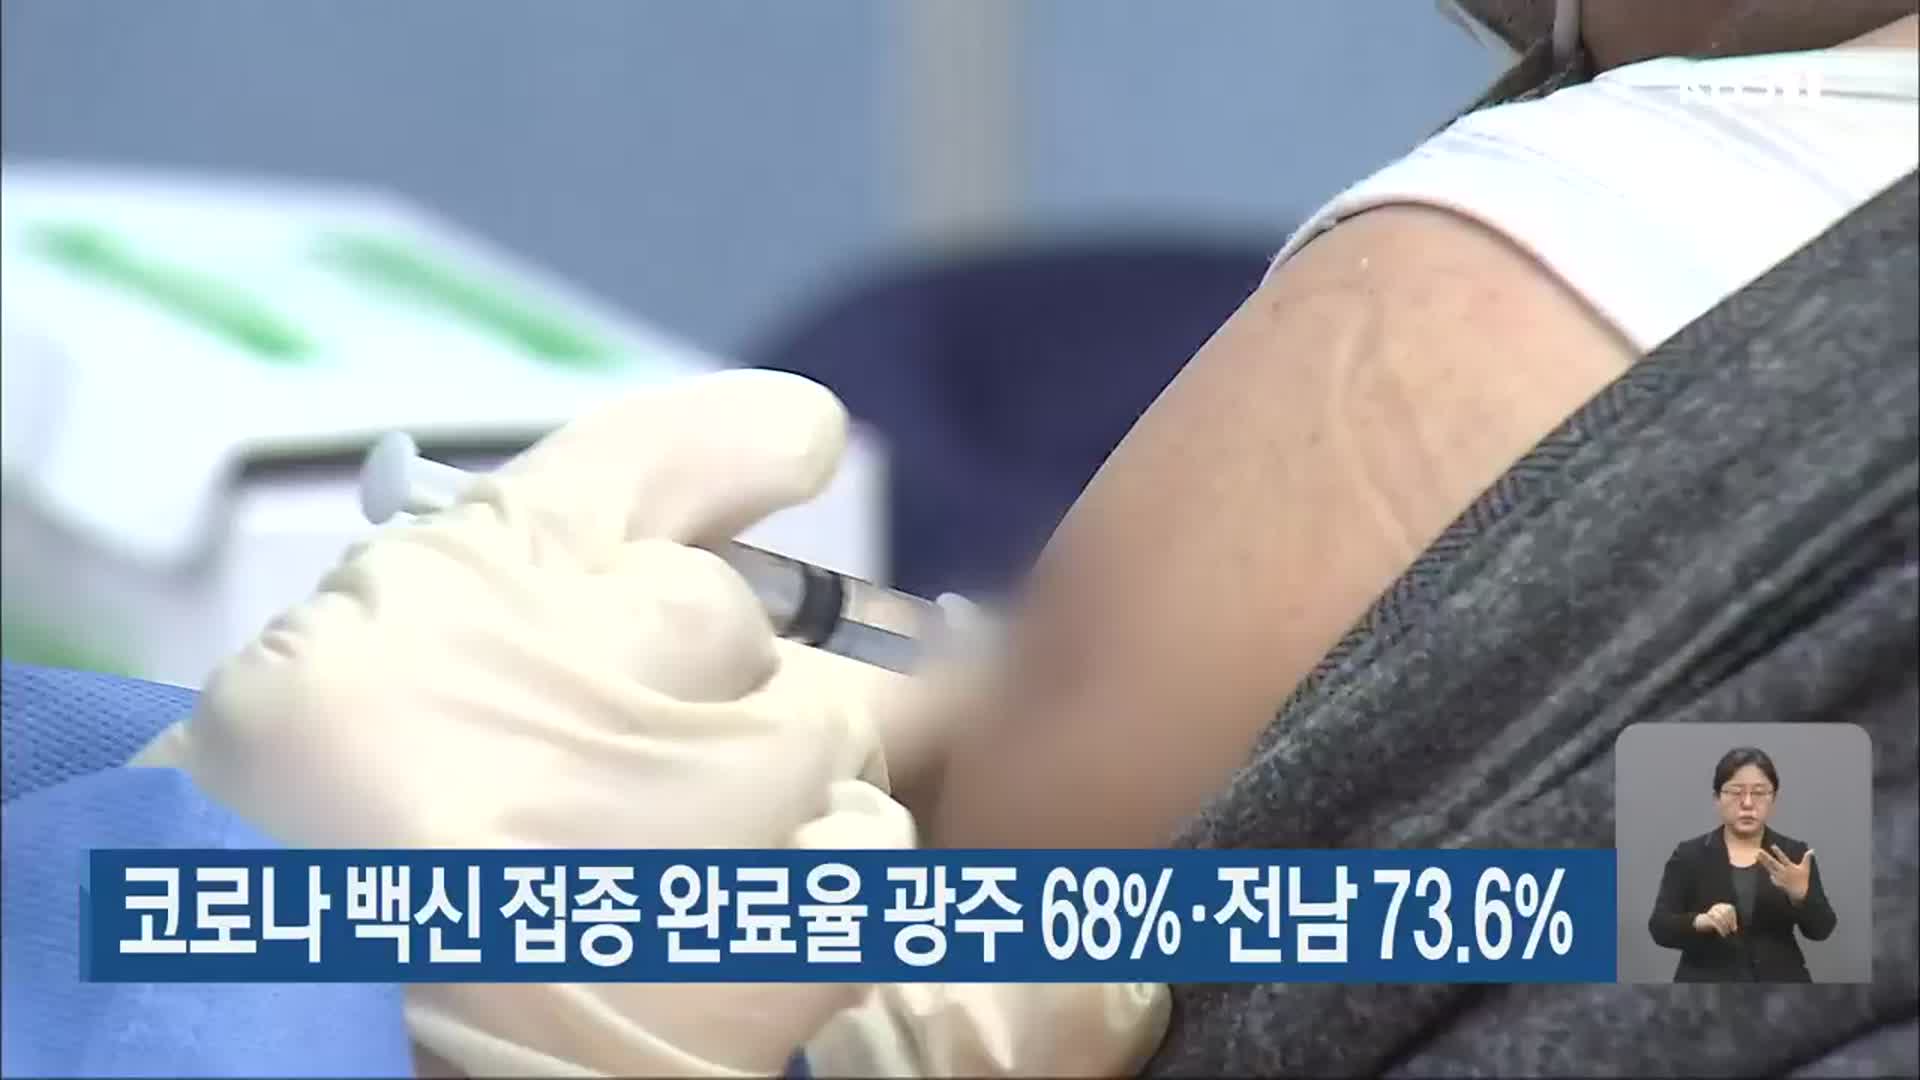 코로나19 백신 접종 완료율 광주 68%·전남 73.6%